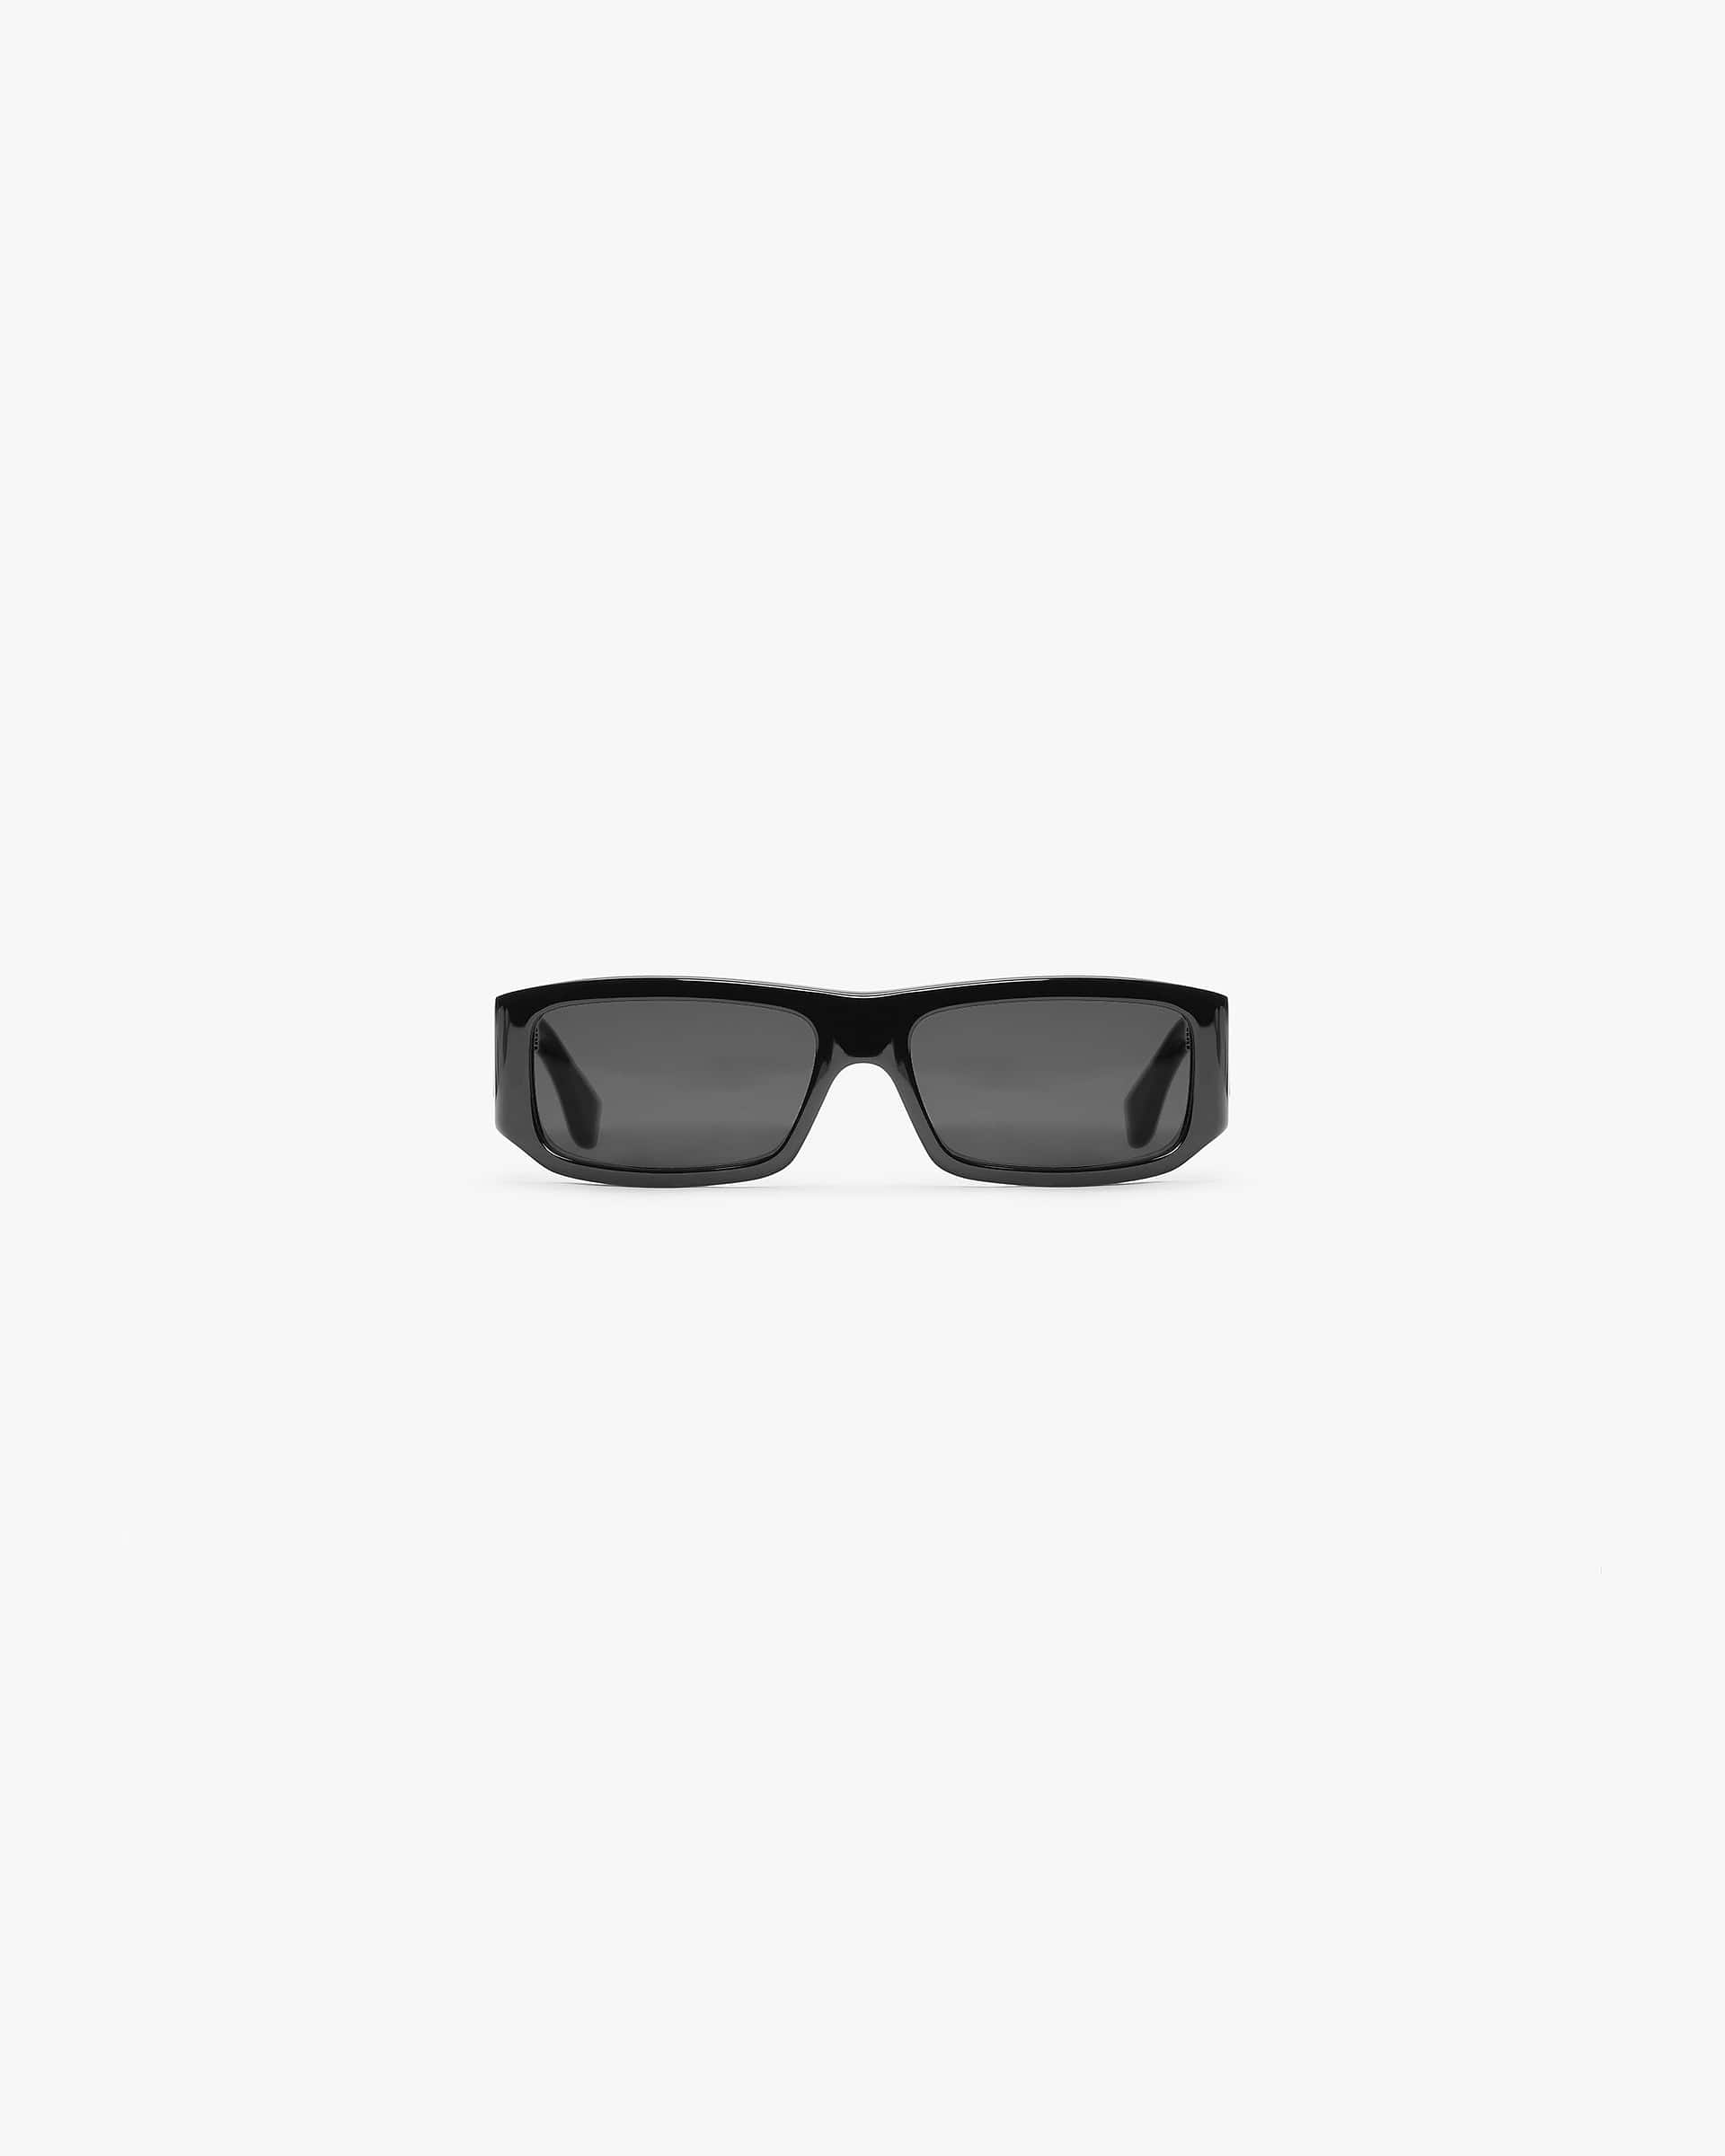 Slim Initial Sunglasses | Black Accessories SC23 | Represent Clo